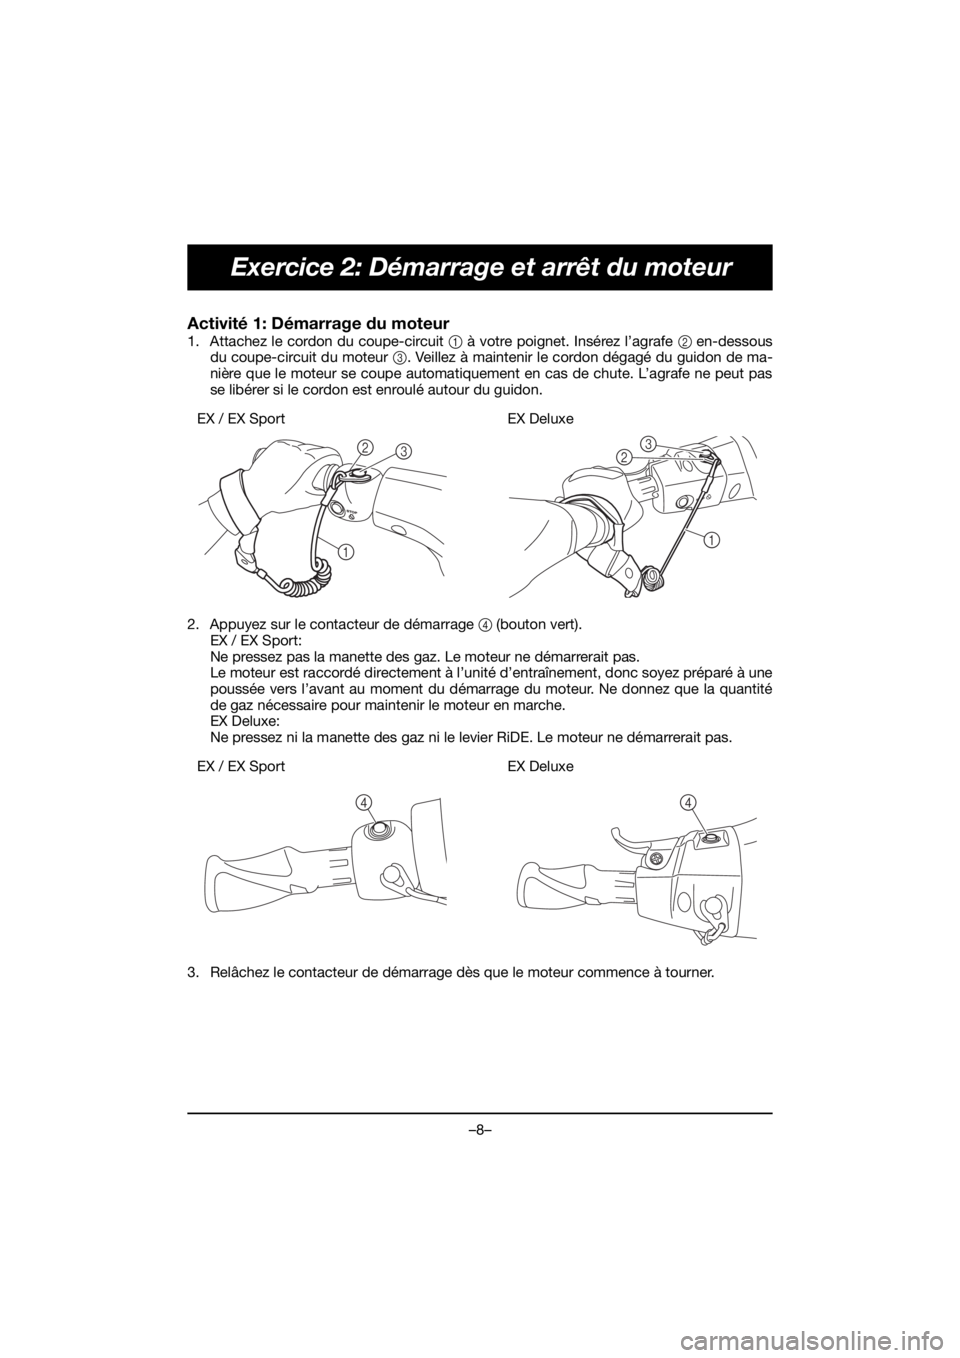 YAMAHA EX SPORT 2020  Notices Demploi (in French) –8–
Exercice 2: Démarrage et arrêt du moteur
Activité 1: Démarrage du moteur 
1. Attachez le cordon du coupe-circuit 1 à votre poignet. Insérez l’agrafe 2 en-dessous
du coupe-circuit du mo